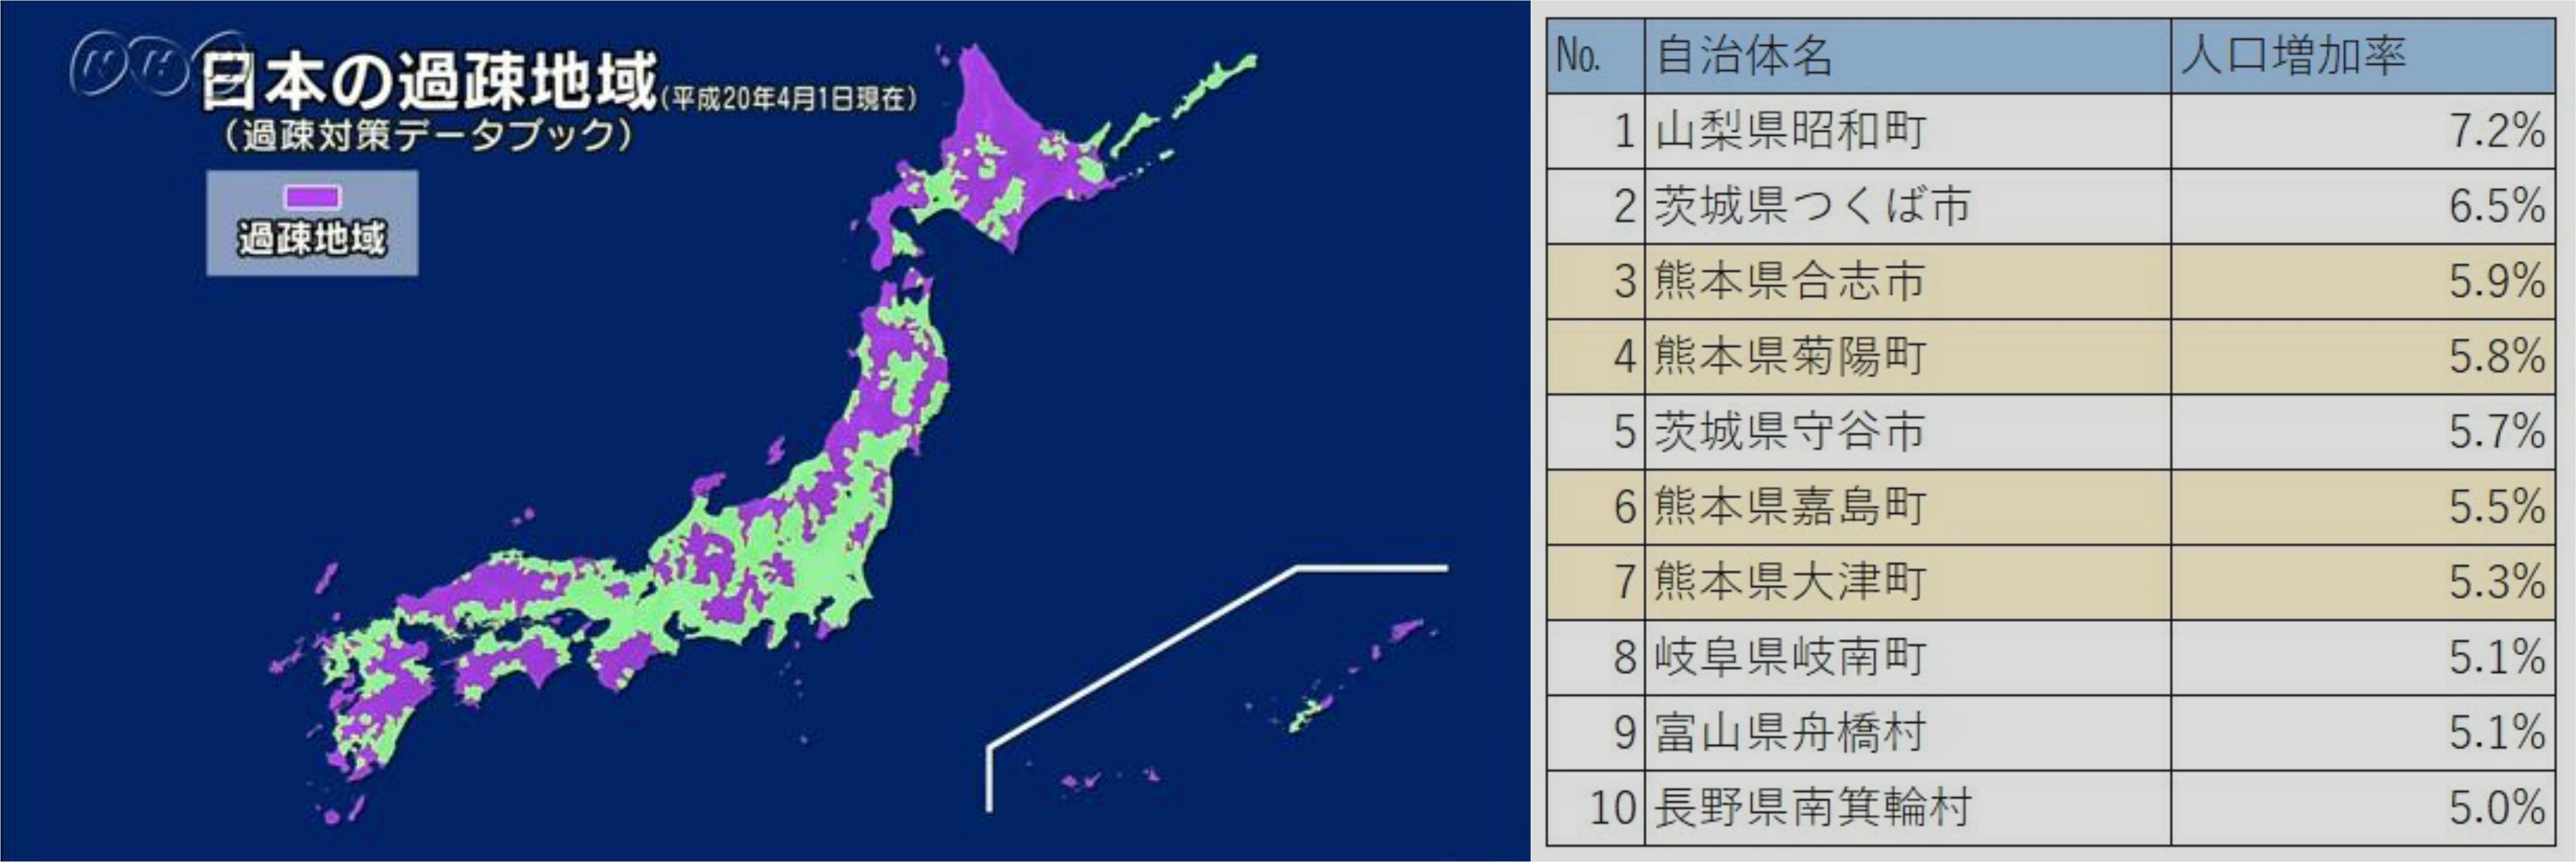 일본 열도 중 보랏빛 지역이 '과소화'가 진행중인, 인구 감소 도시를 가리켜요. 그 중 오른쪽은 와중에 증가하고 있는 지역들. 쿠마모토 현은 4곳이나 10위 안에 들었어요.